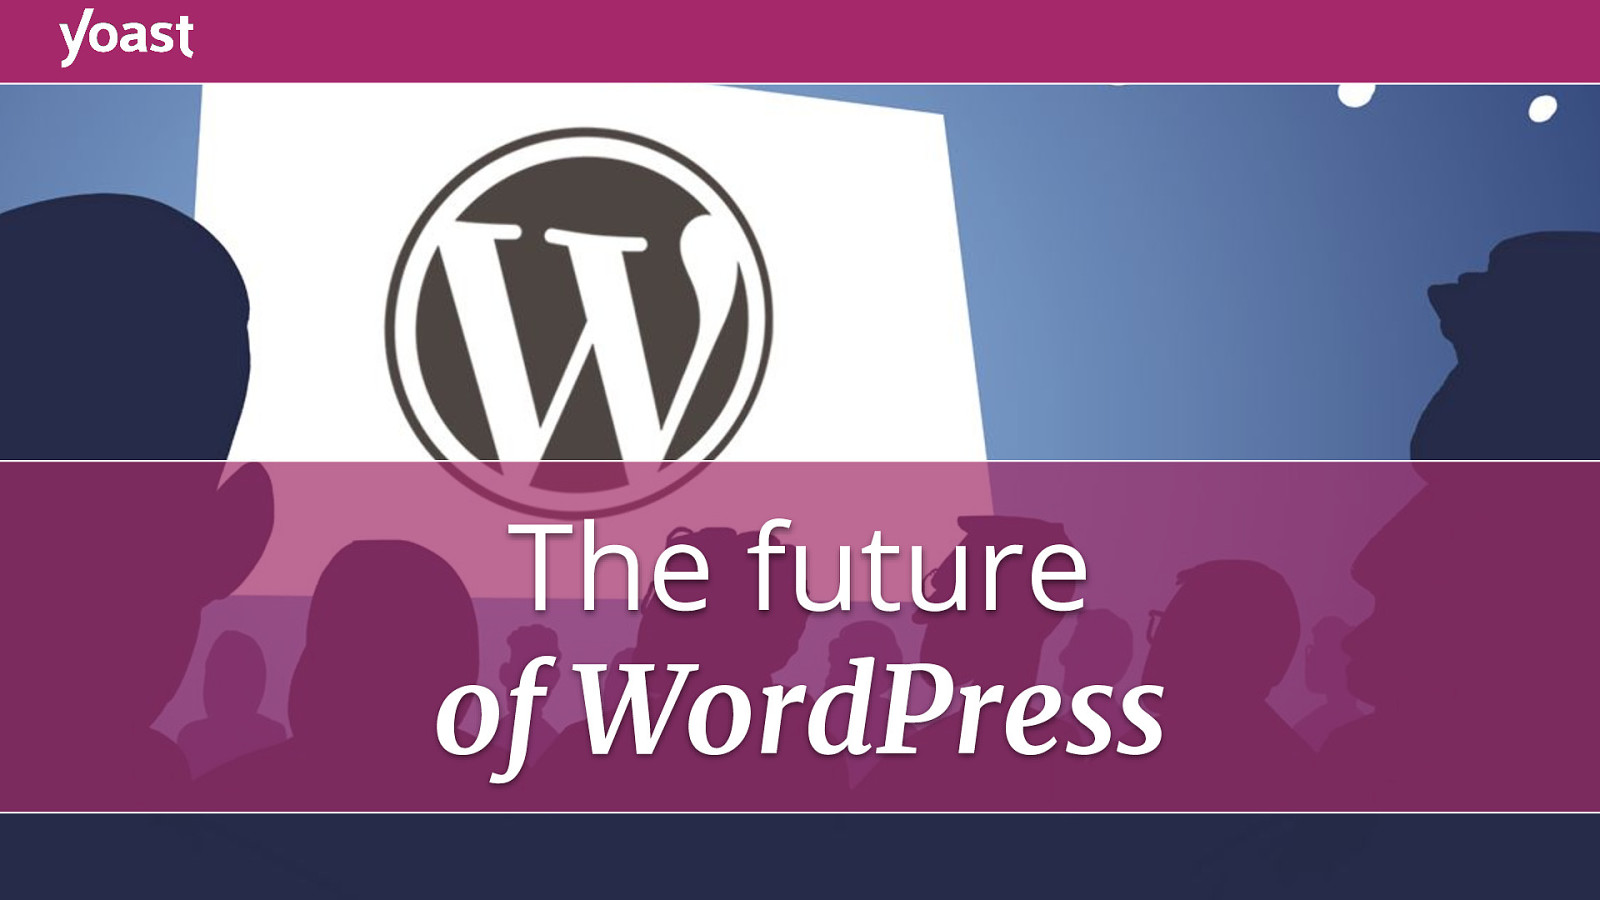 The future of WordPress